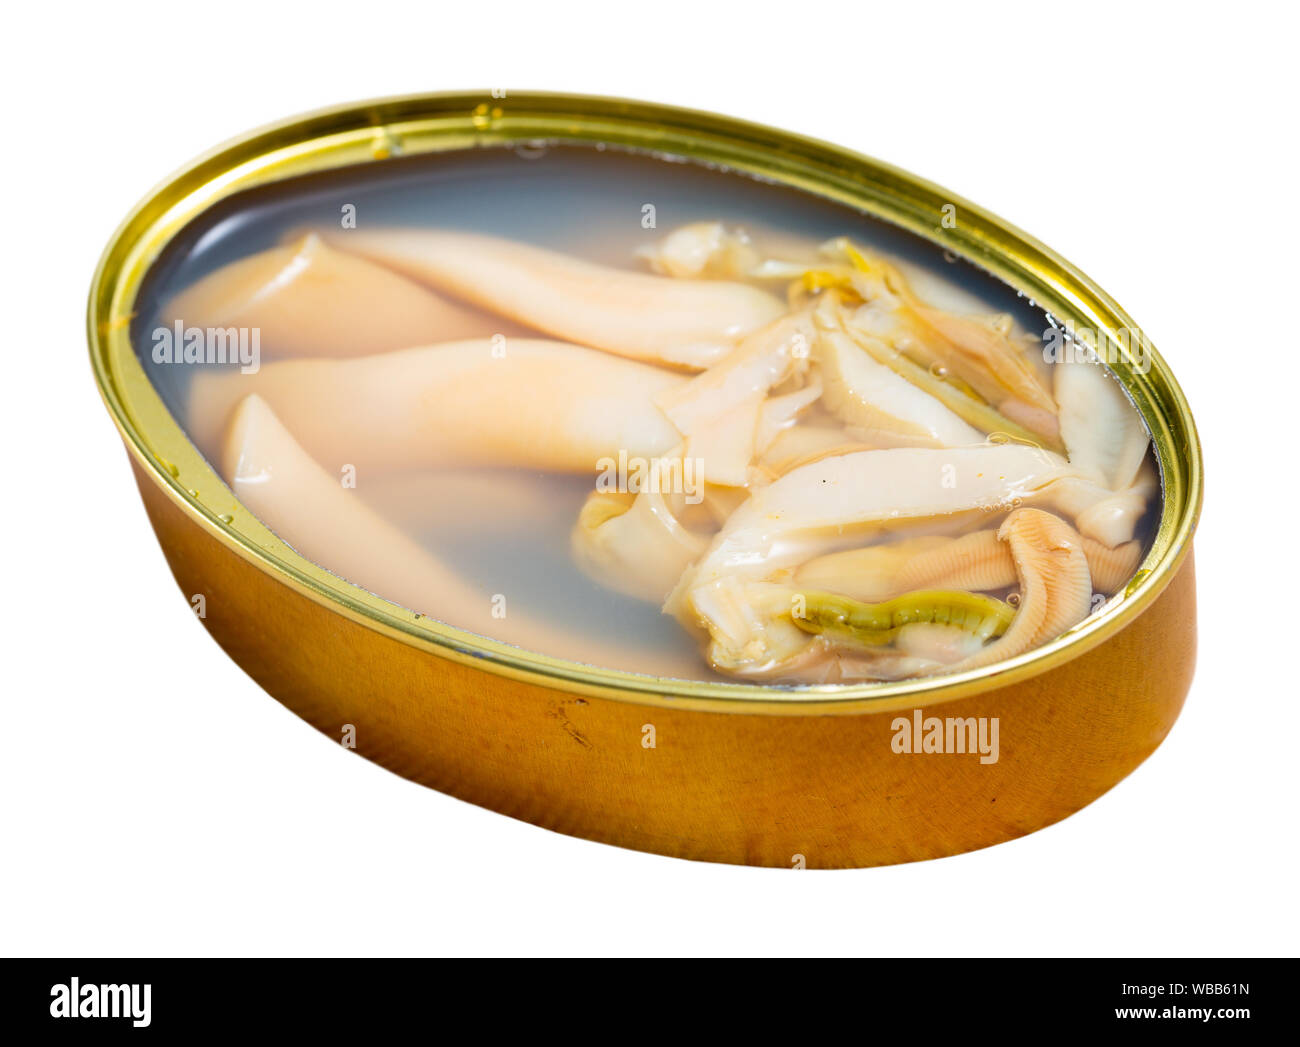 Immagine di gustosi piatti di mare di navajas naturale in aprire il barattolo di latta. Isolato su sfondo bianco Foto Stock